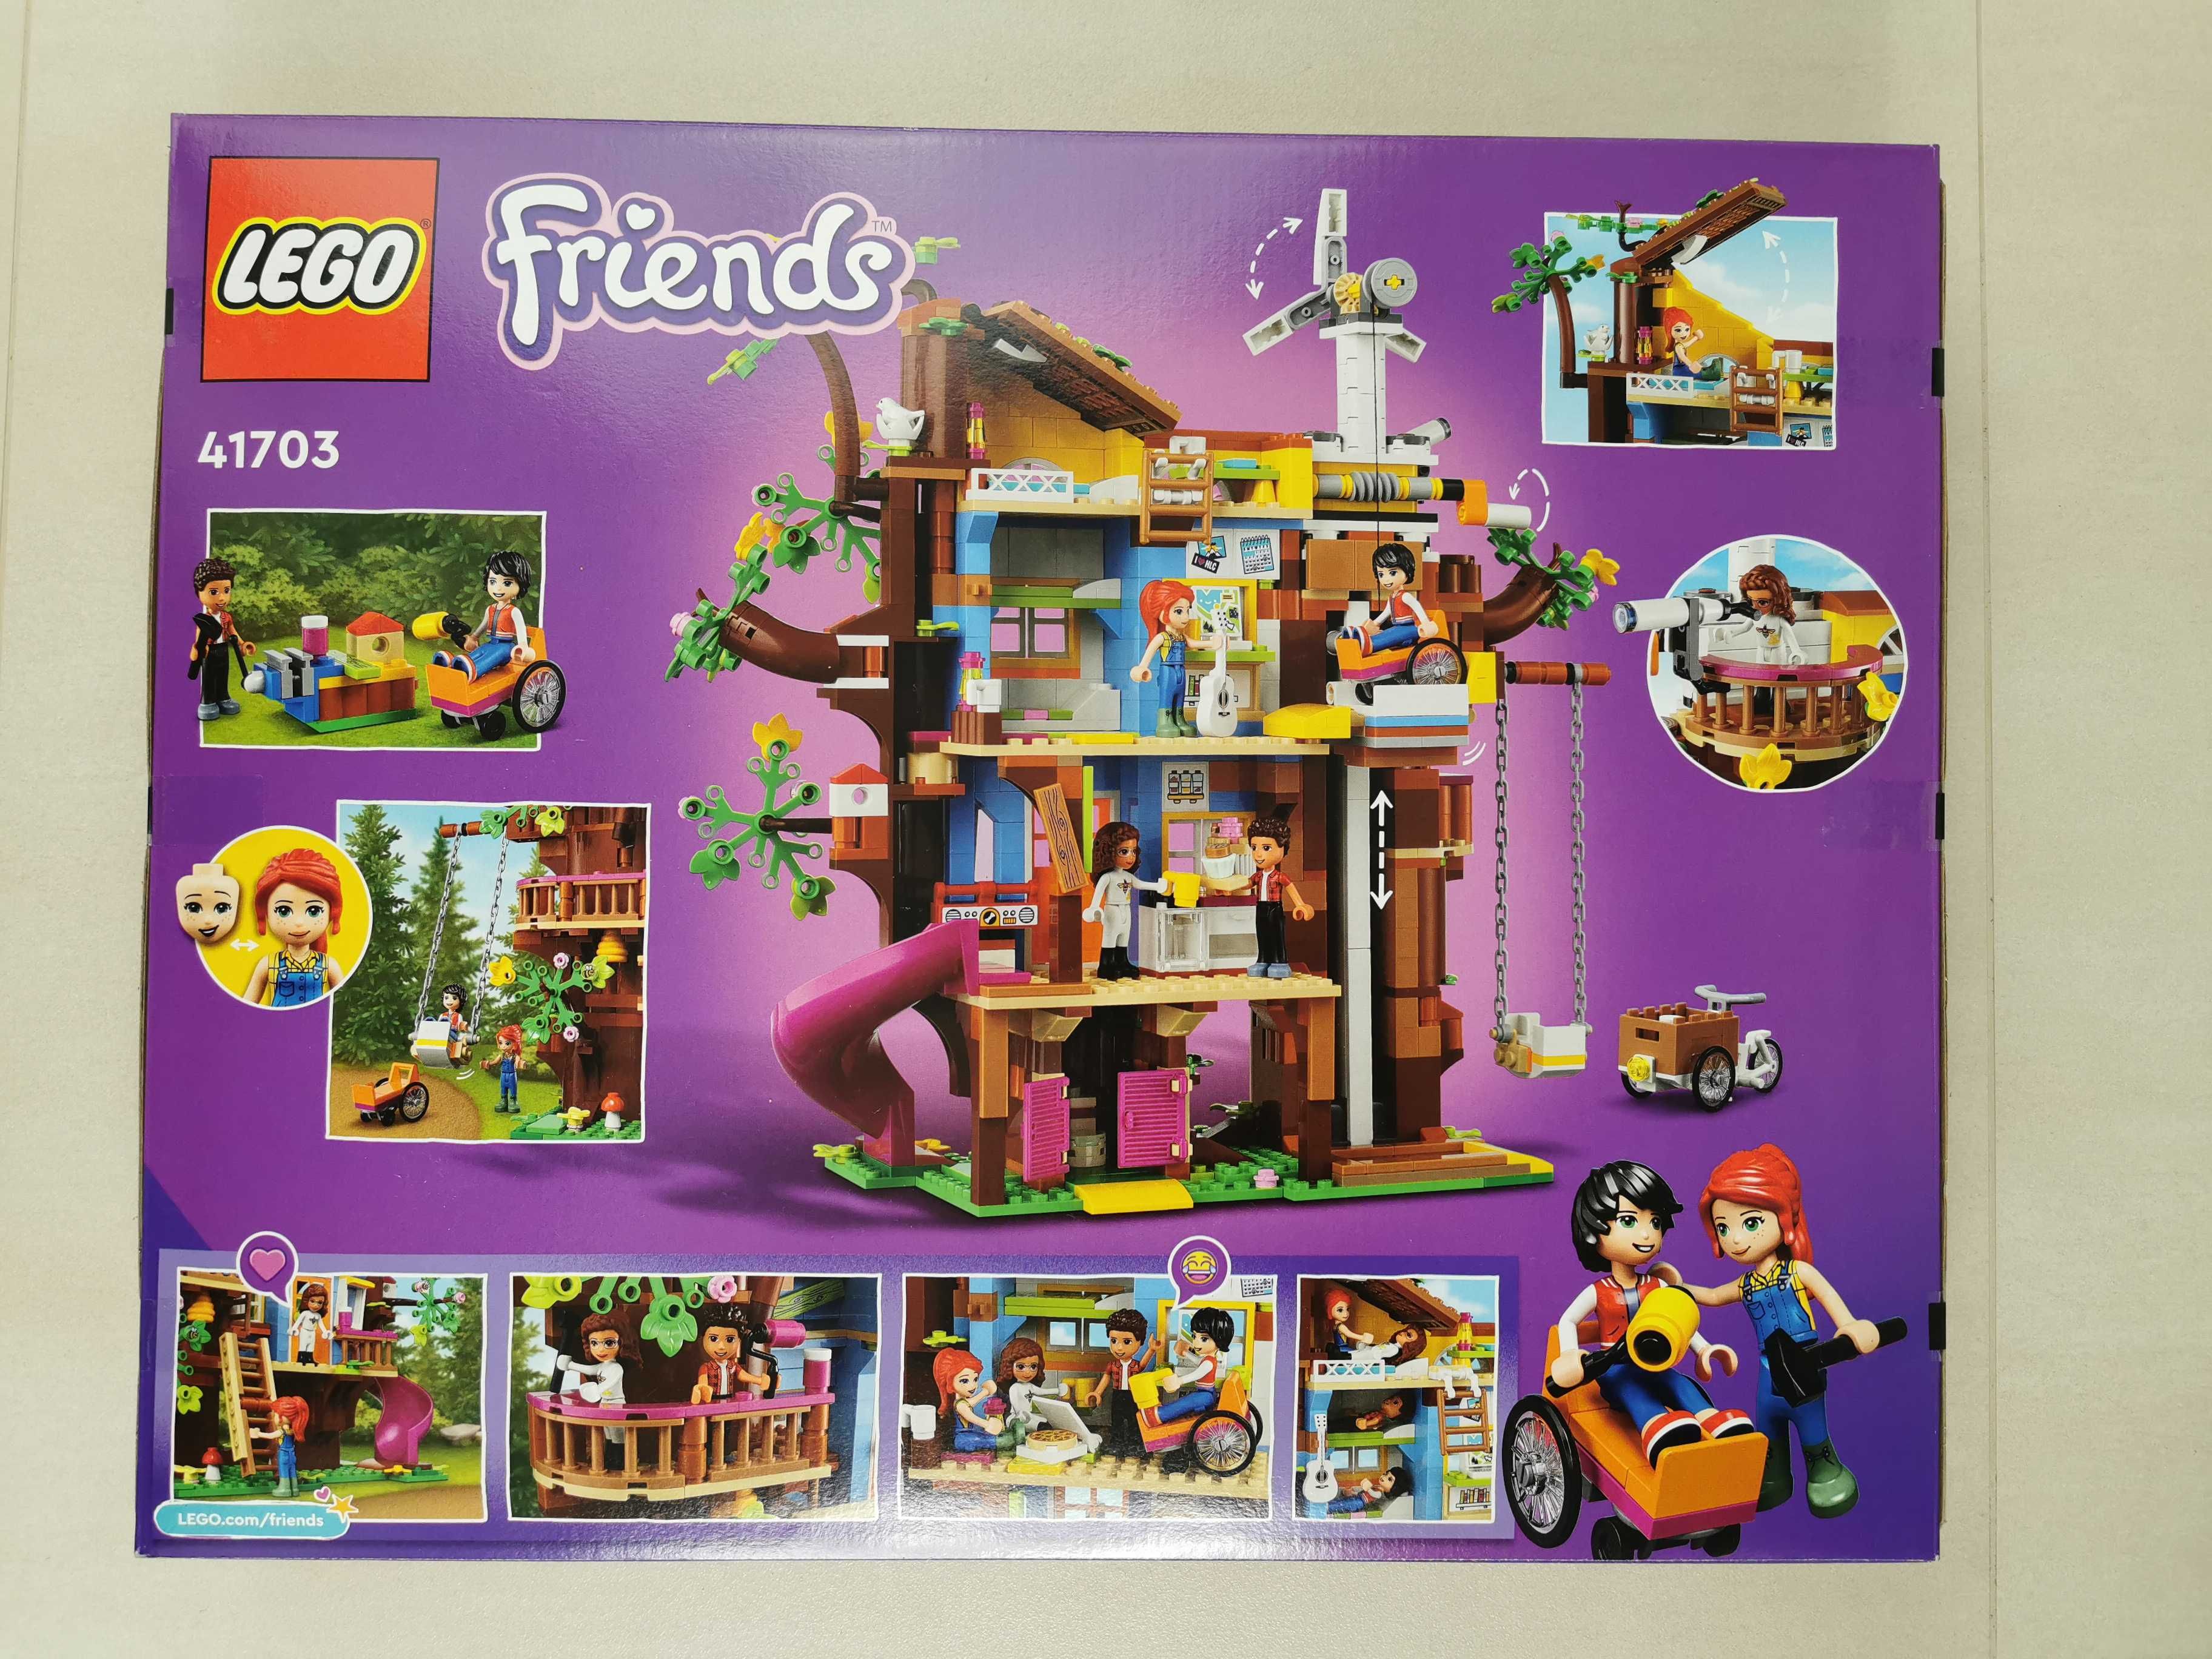 NOWE LEGO Friends Domek Na Drzewie Przyjaźni 41703 DUŻY Zestaw WYSYŁKA